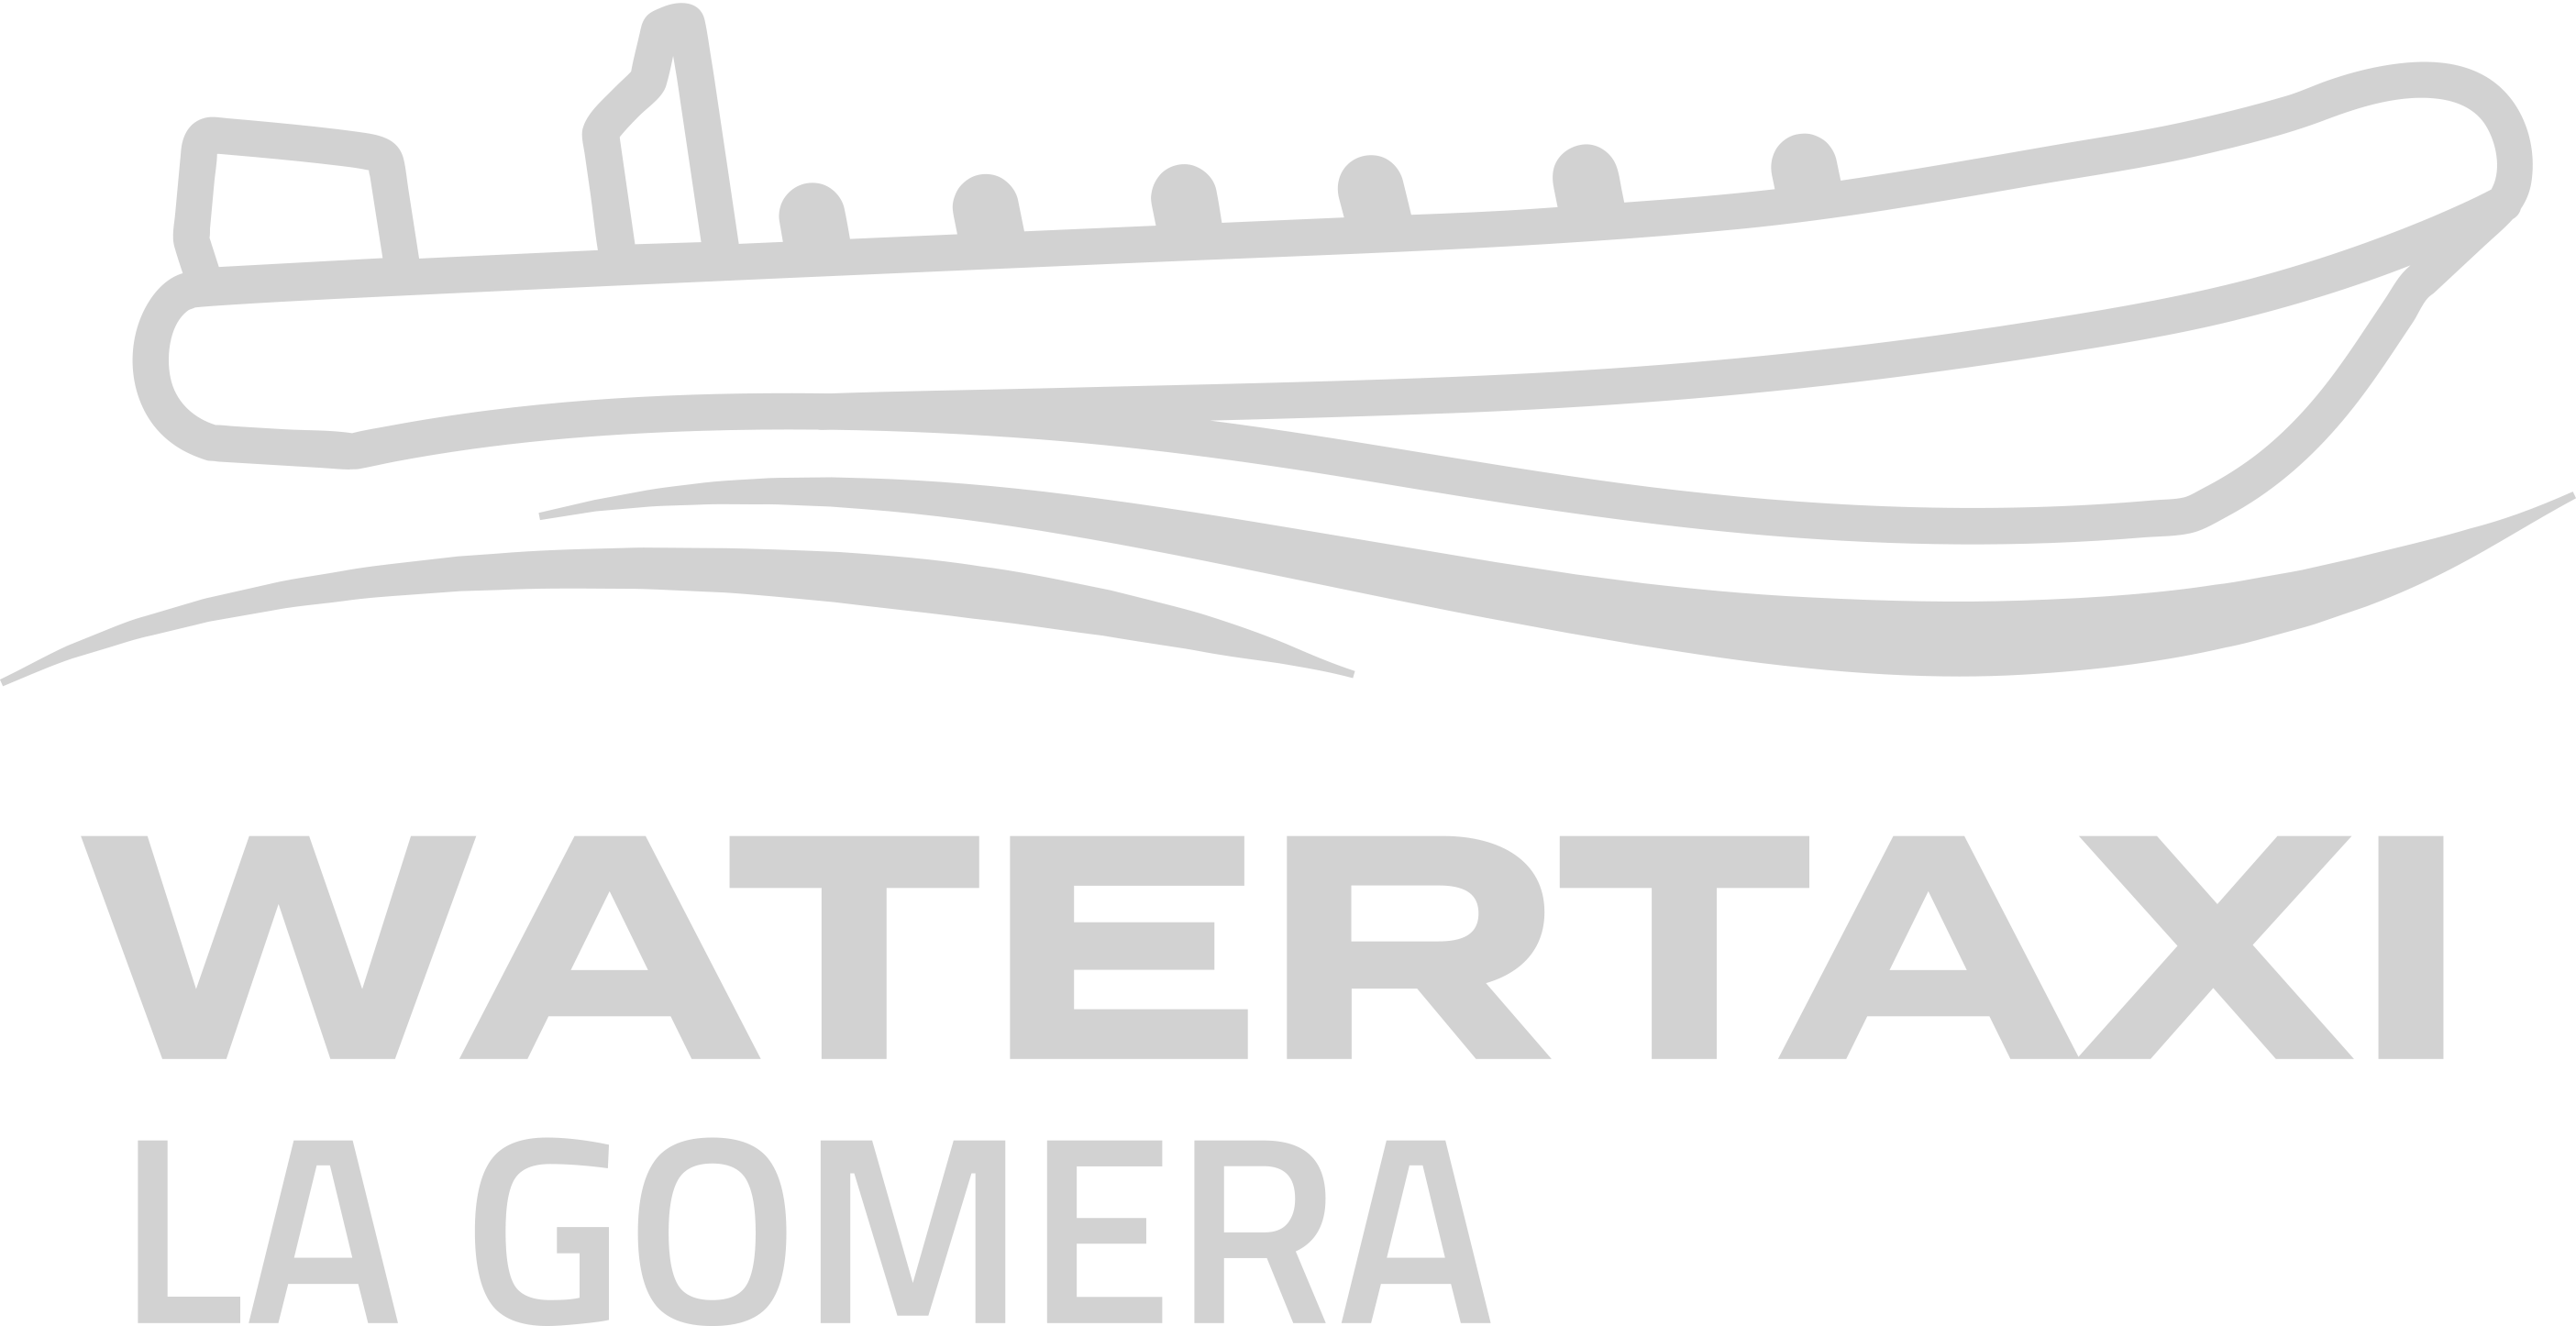 Watertaxi La Gomera